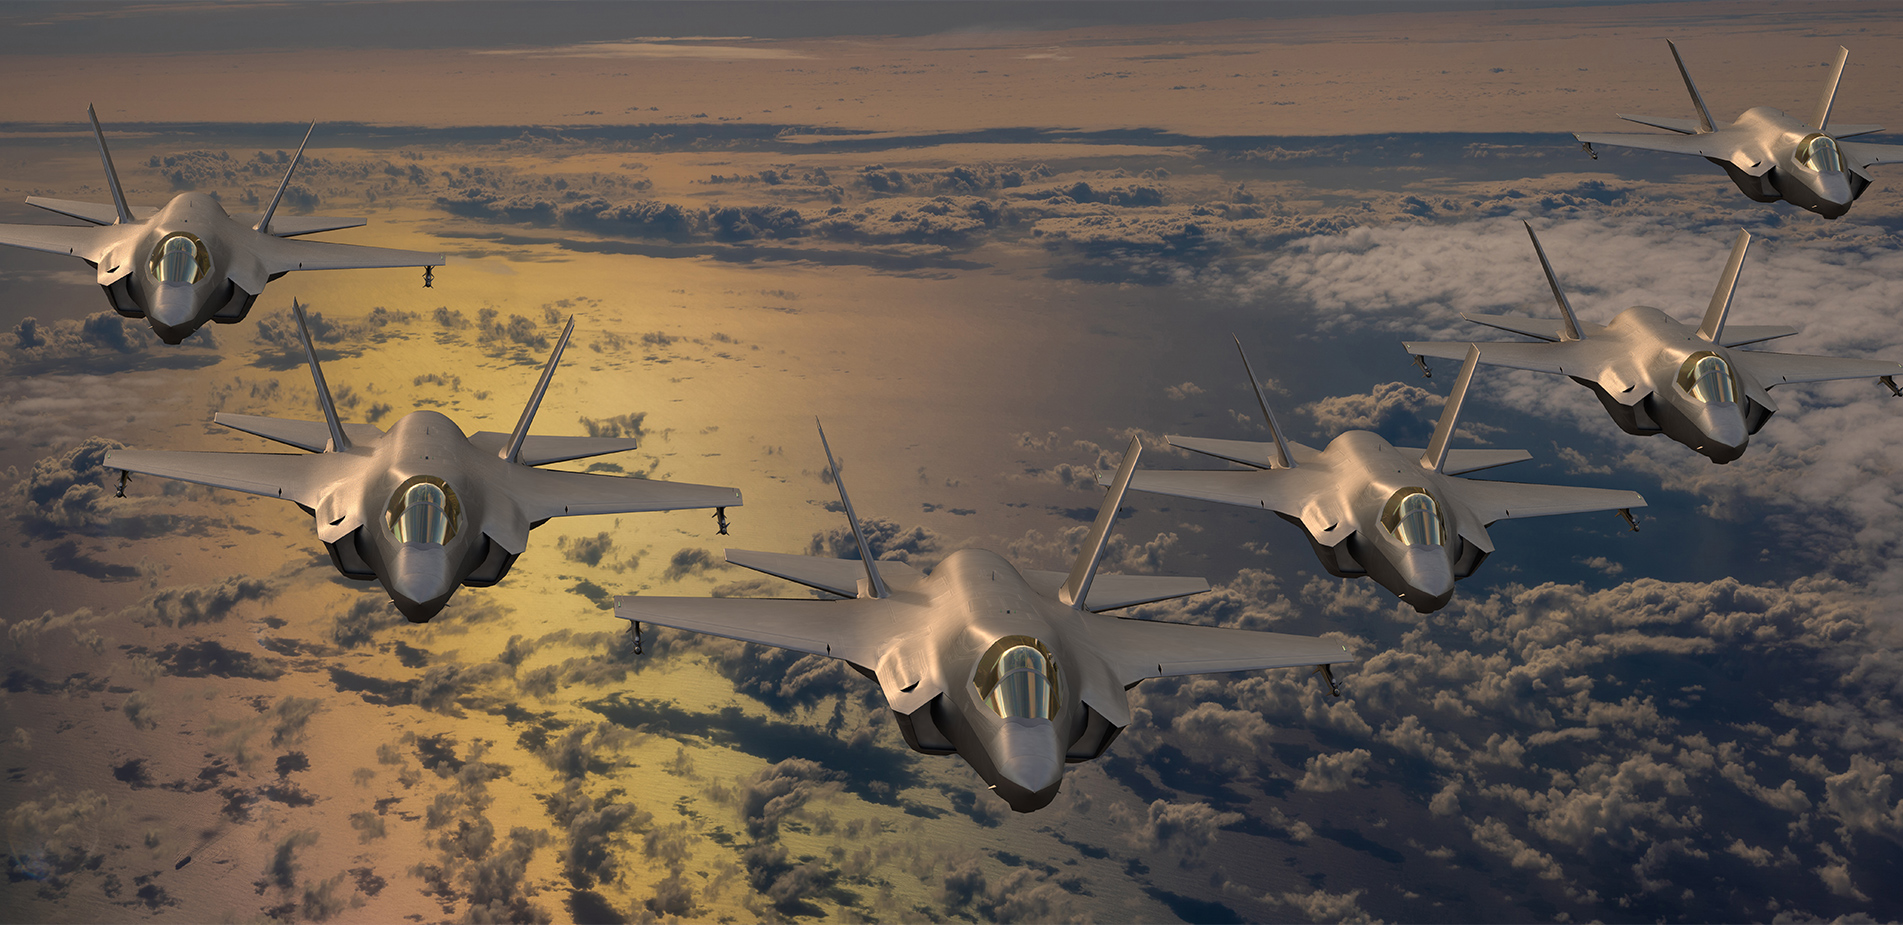 Οι εκπληκτικές δυνατότητες των F-35: Γιατί η Ελλάδα θέλει διακαώς τα μαχητικά αεροσκάφη;